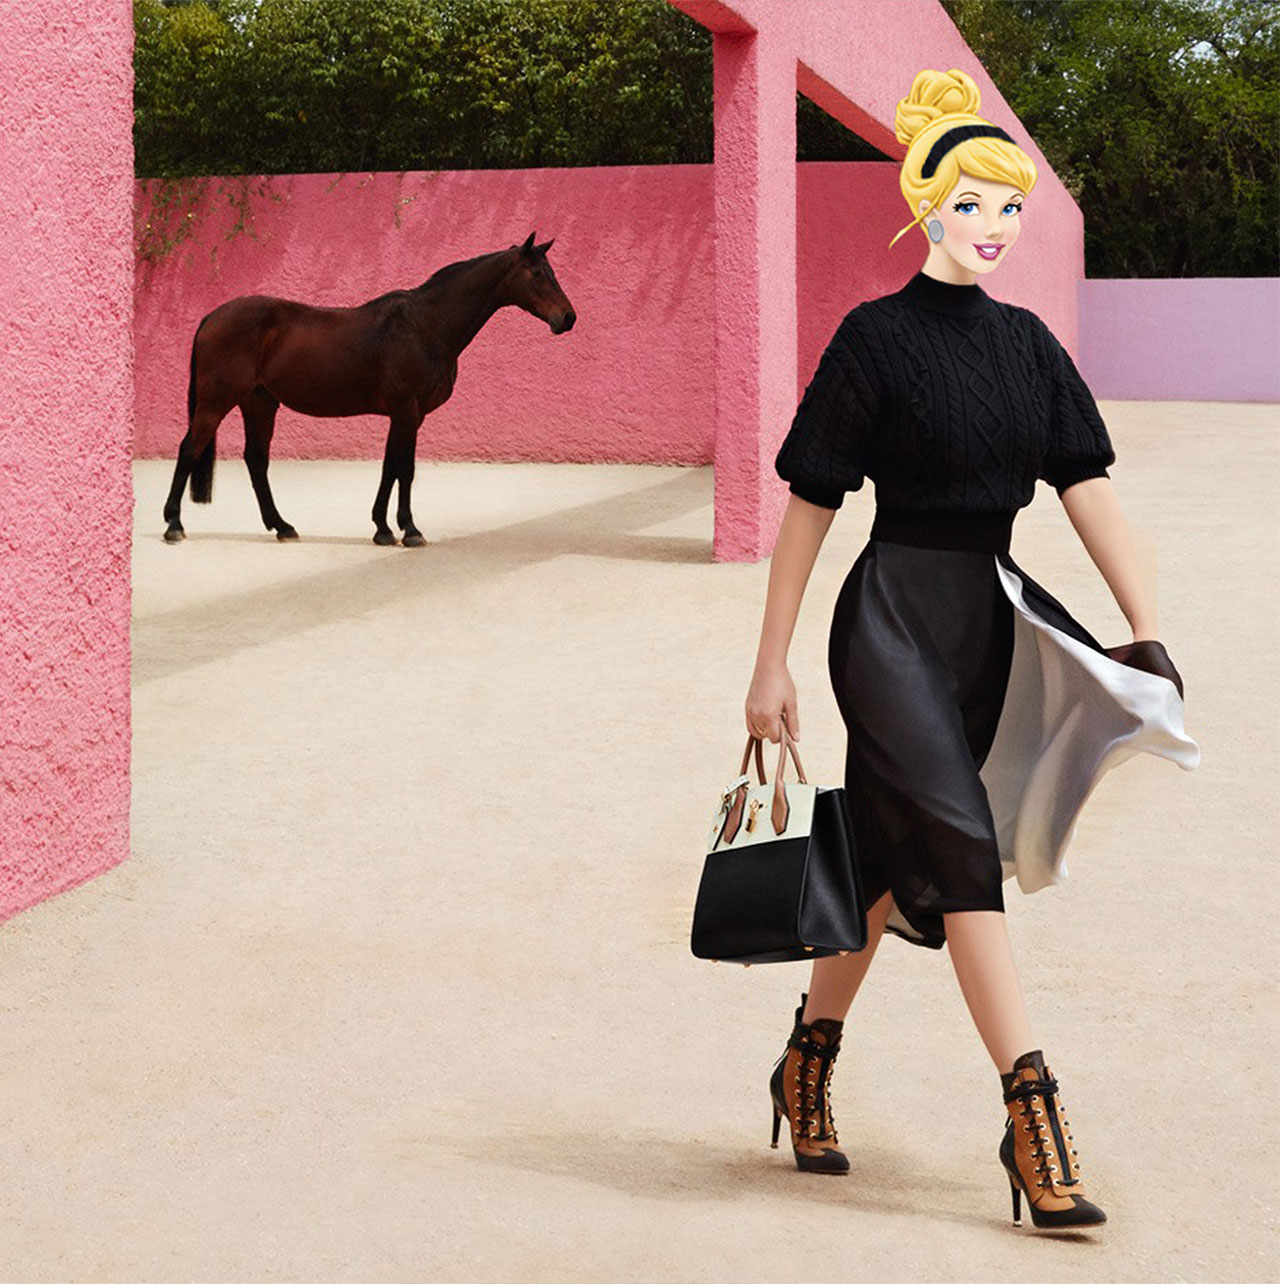 莉亚·赛杜 (Lea Seydoux) 在路易威登 (Louis Vuitton) 的 The Spirit Of Travel 2016 广告中饰演灰姑娘。 摄影：Patrick Demarchelier，Marie-Amelie Sauvé 造型，Gregory Masouras 照片编辑。